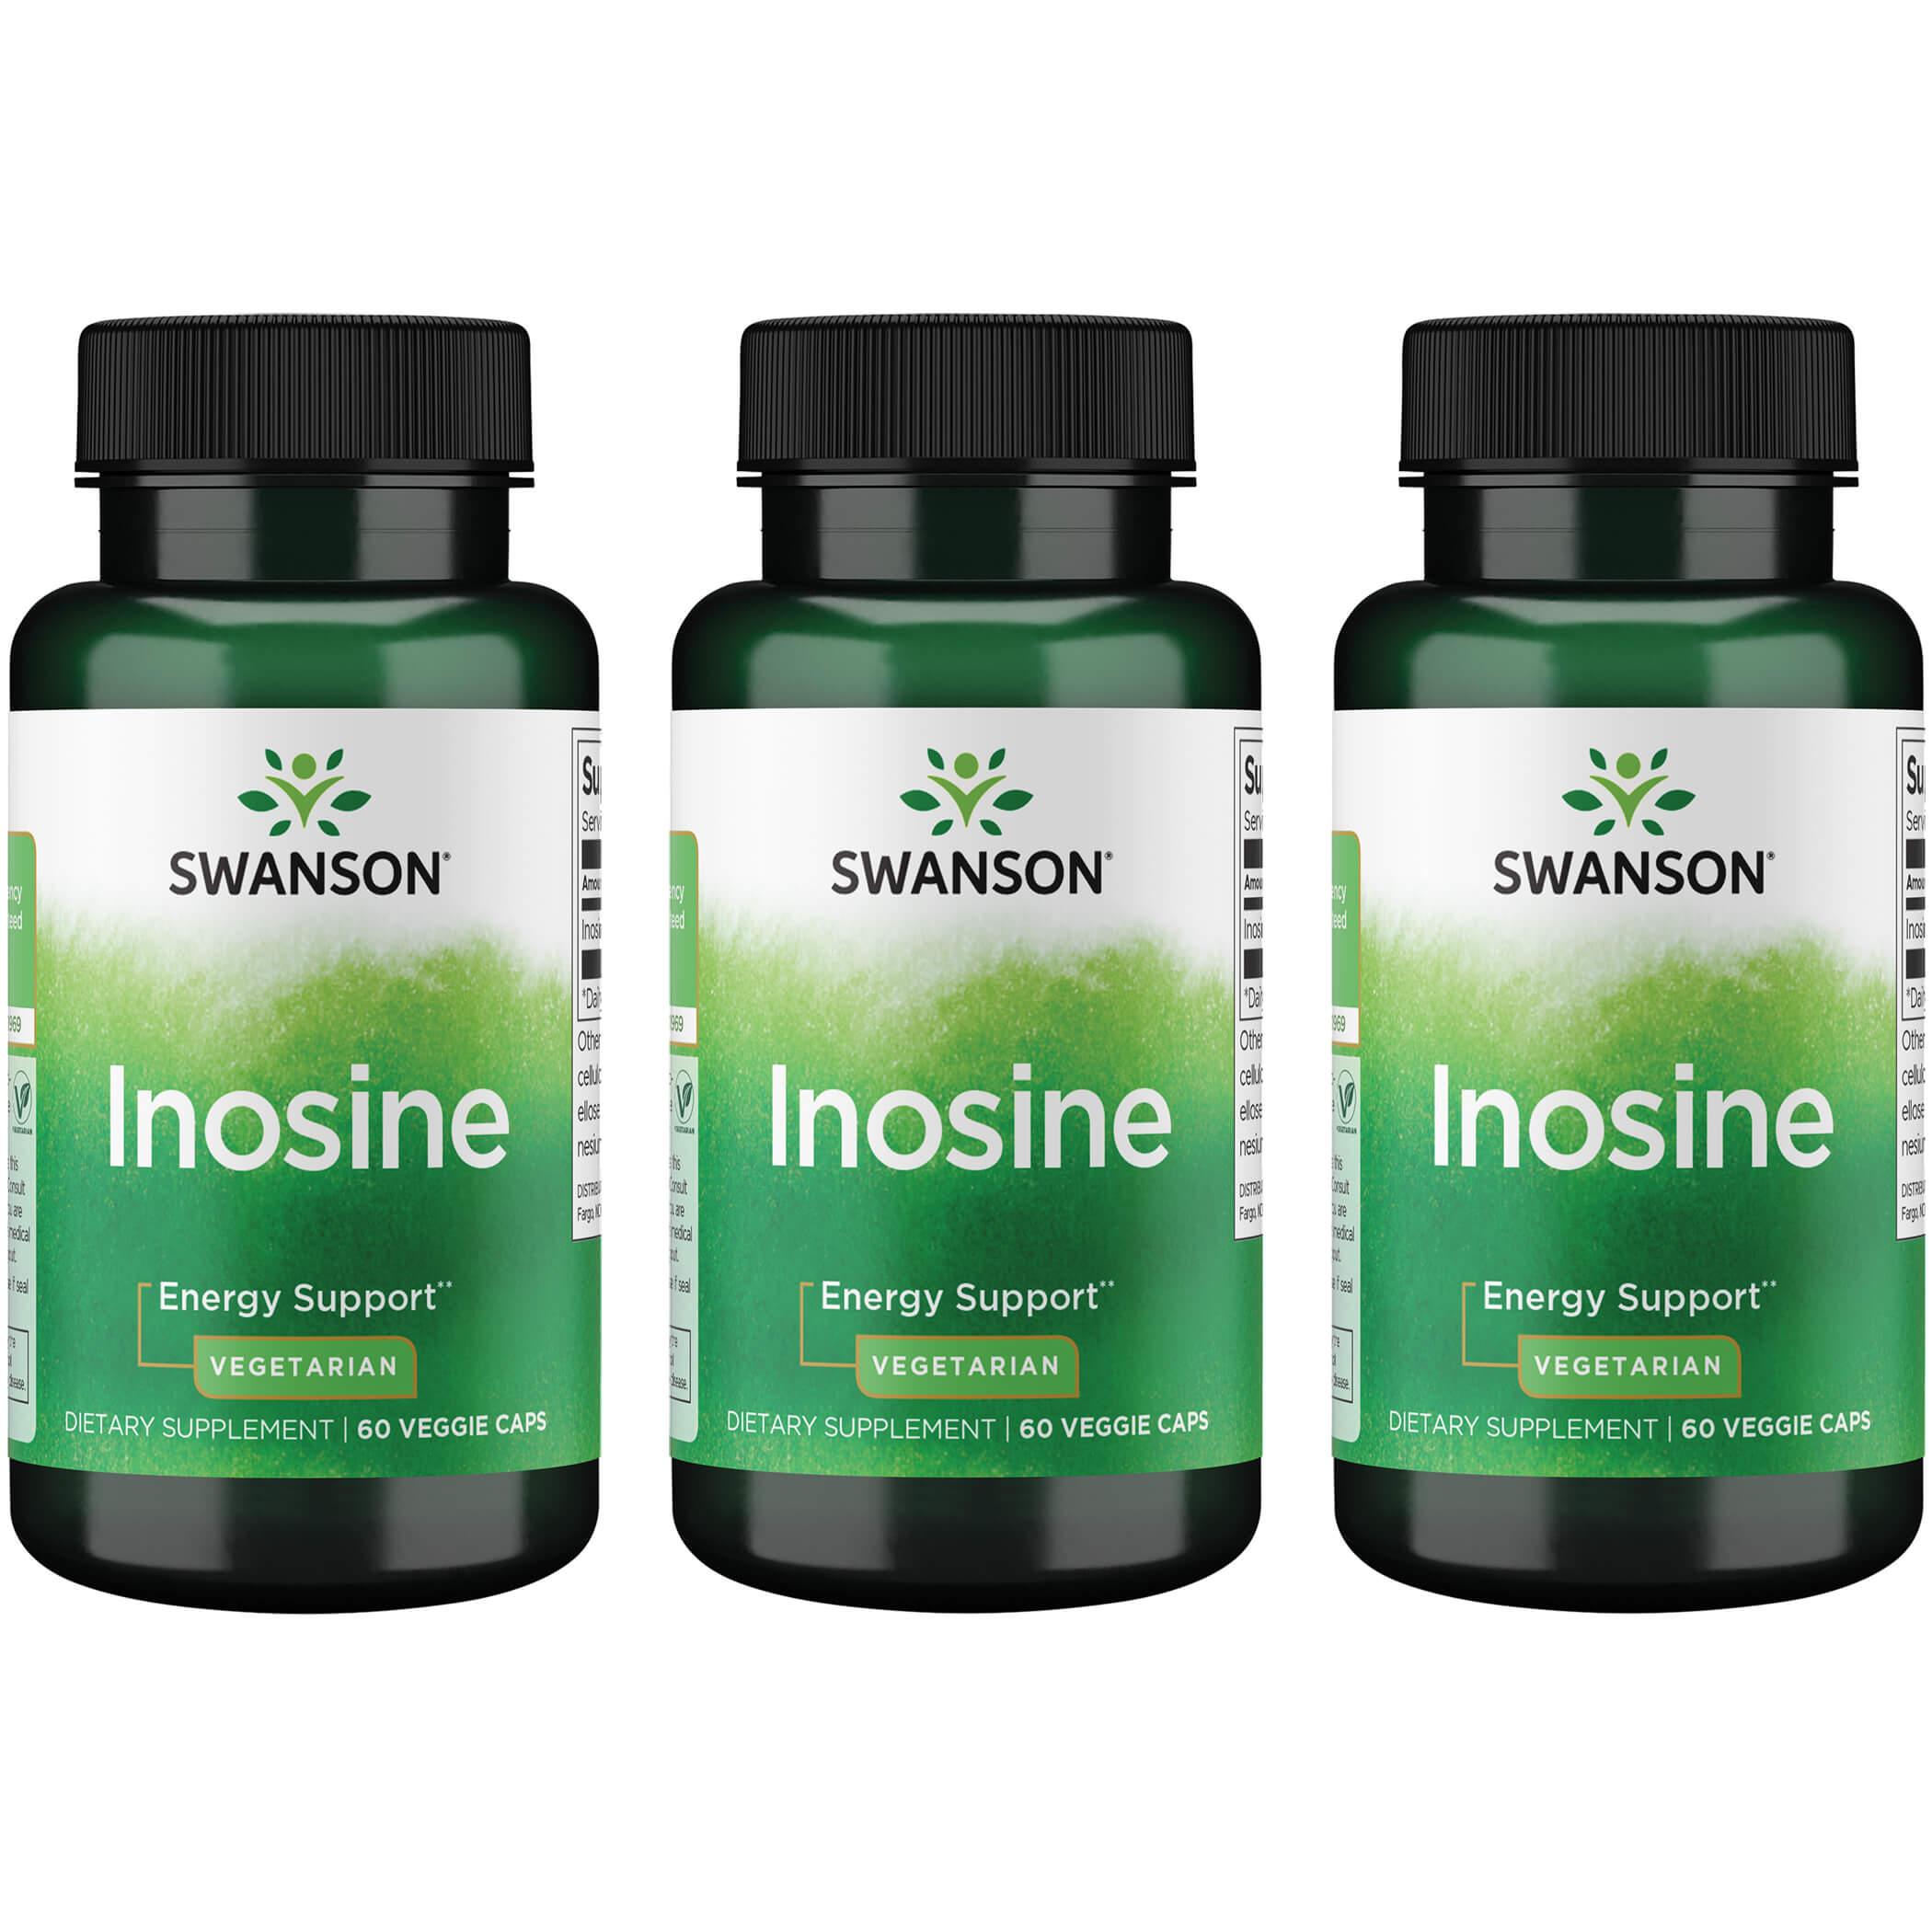 Swanson Premium Inosine - Vegetarian 3 Pack Supplement Vitamin 500 mg 60 Veg Caps